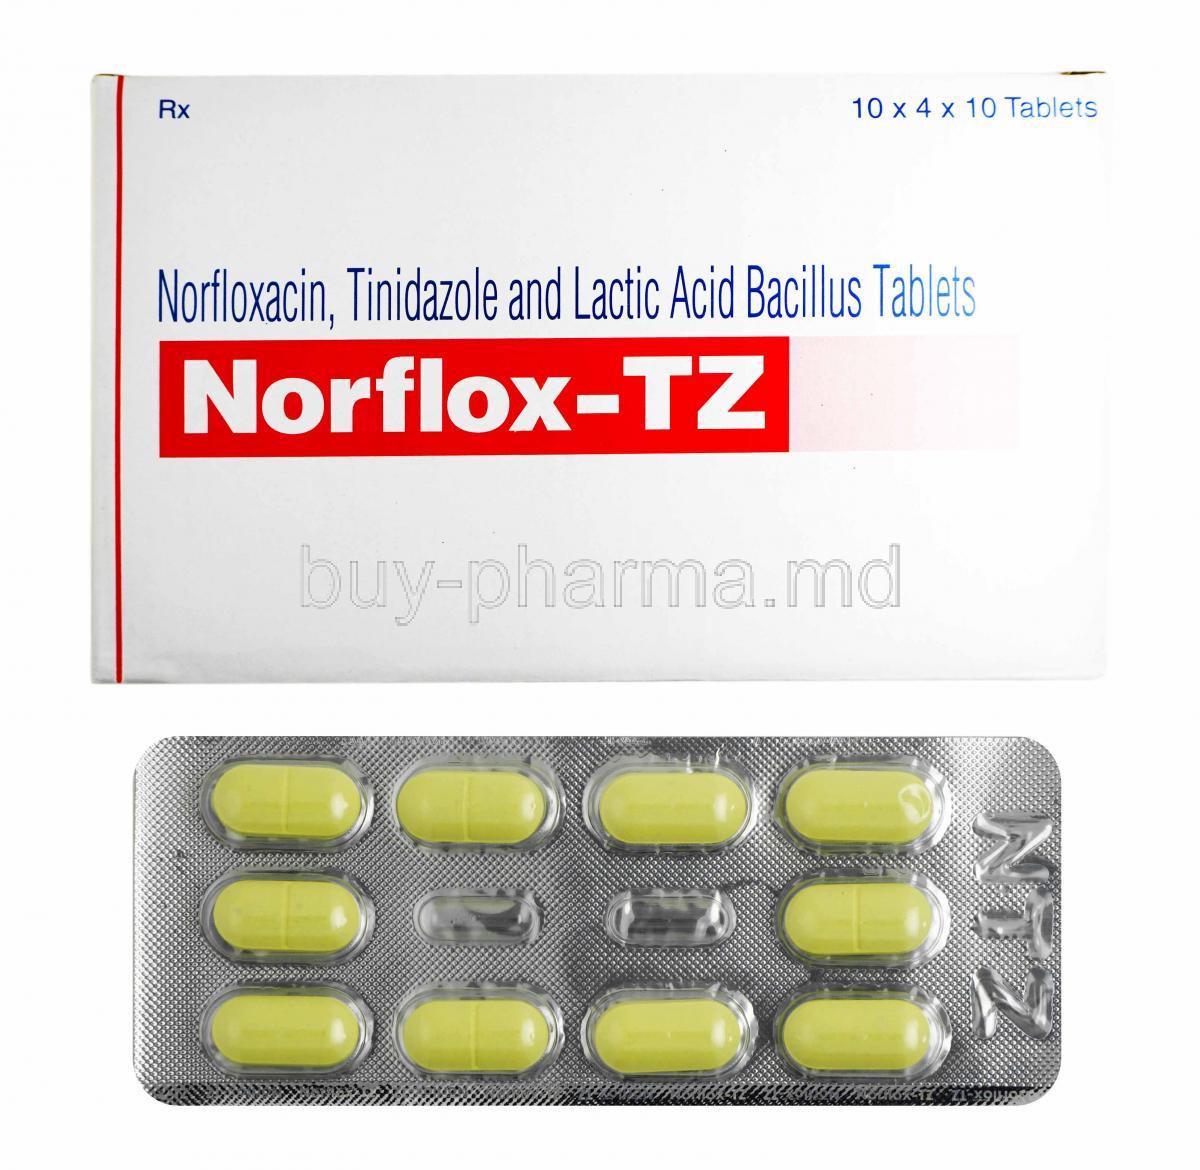 Norflox-TZ, Tinidazole, Norfloxacin and Lactobacillus box and tablets